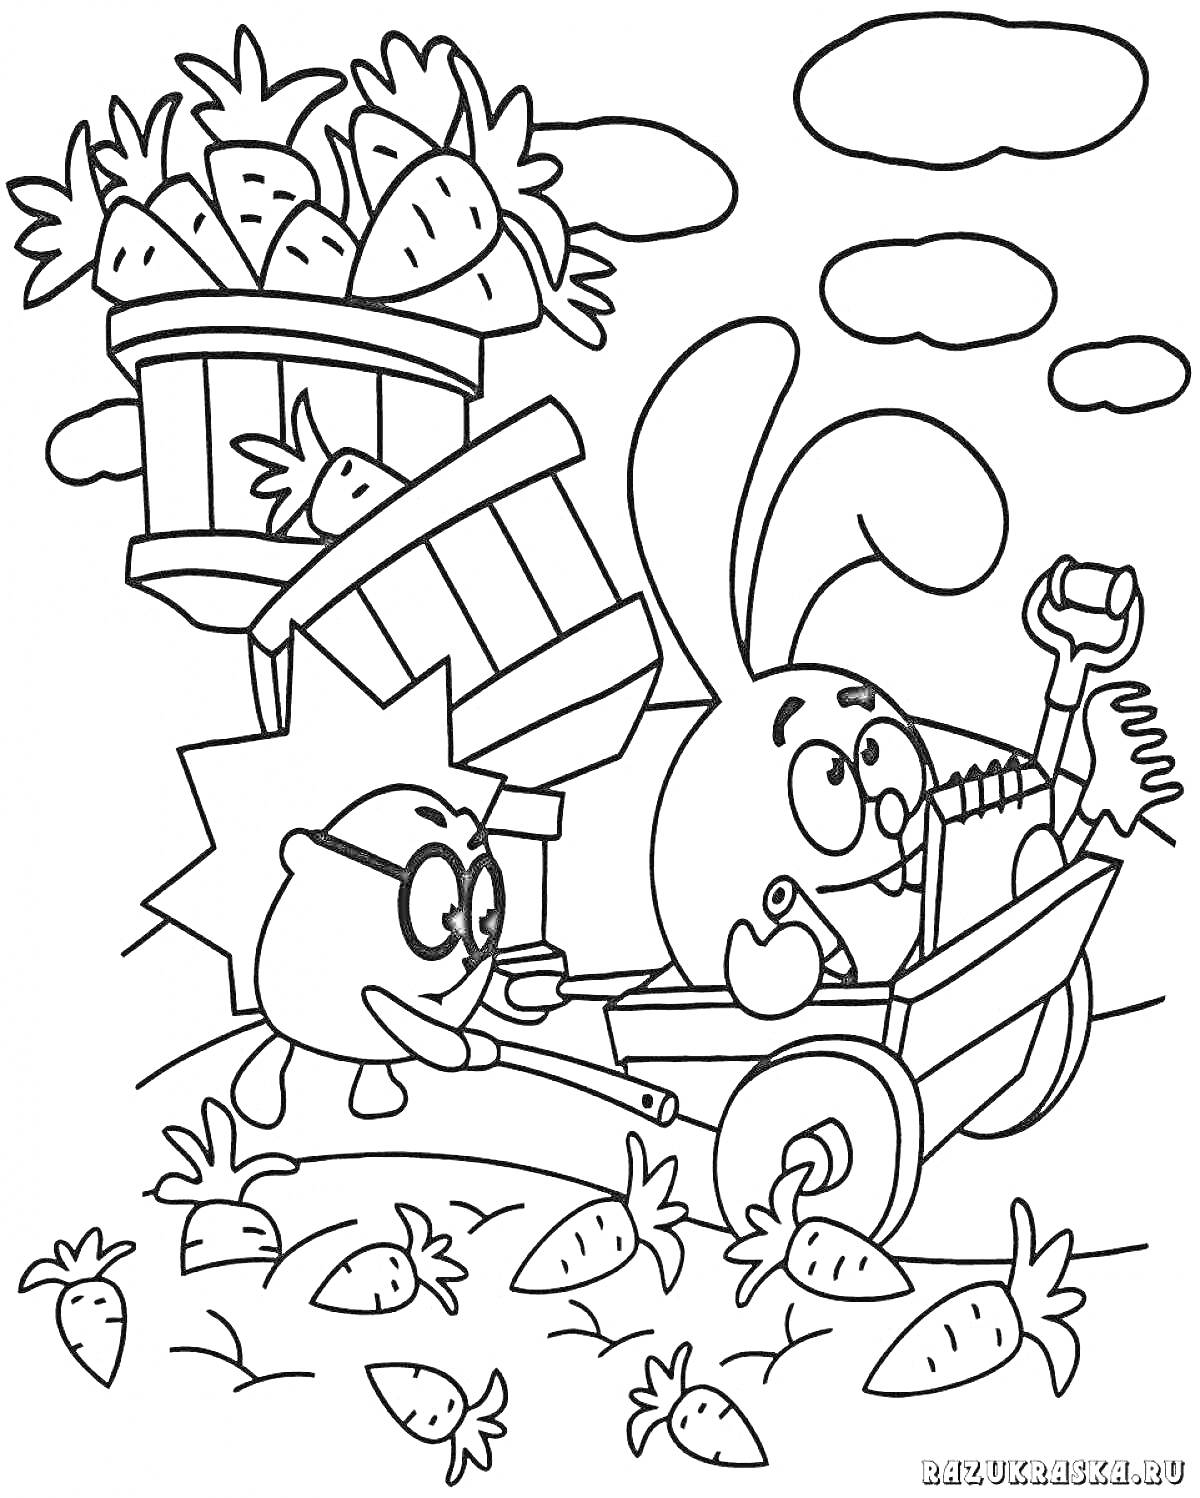 Раскраска Смешарики - Крош и Ёжик собирают морковь возле тележки с пустым ведром и корзиной, из которой высыпается морковь